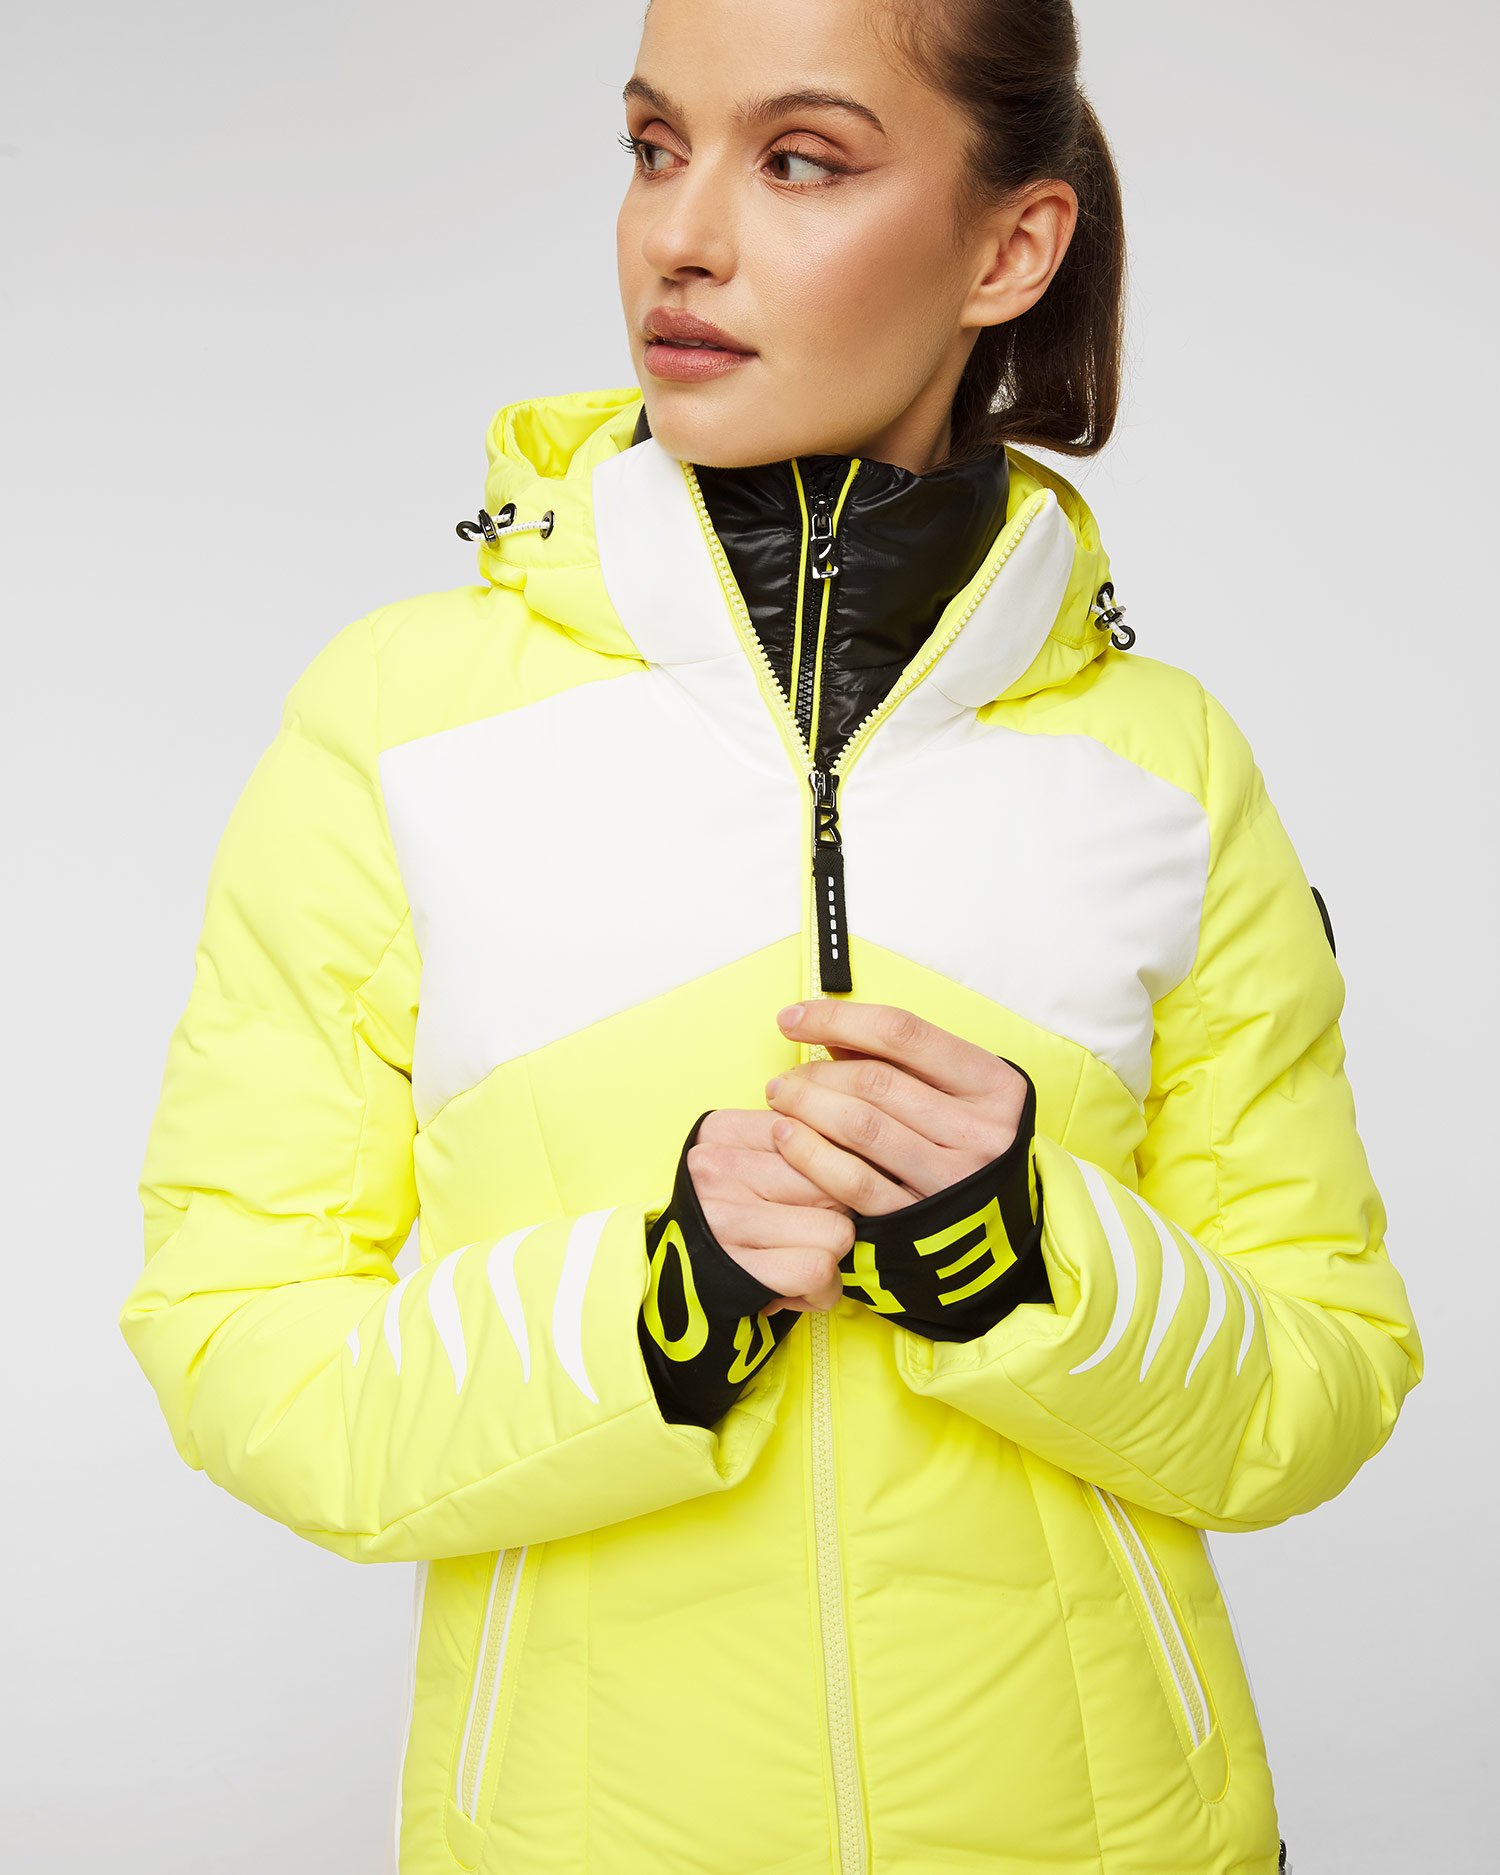 Ski jackets for women by BOGNER